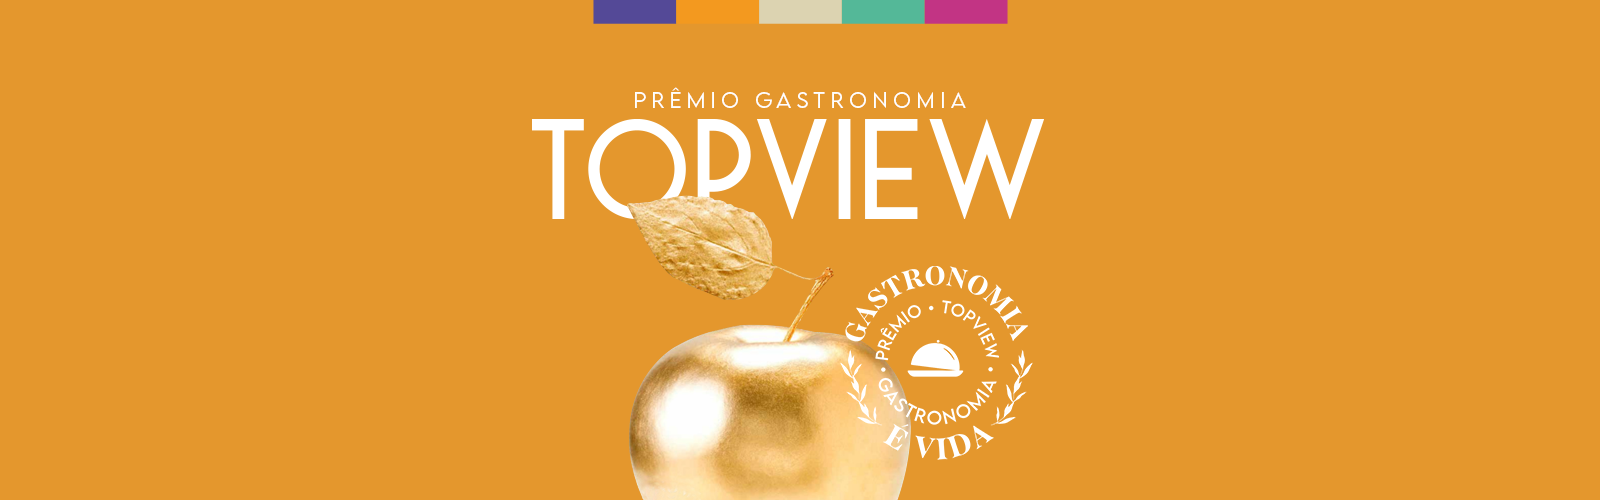 Prêmio Gastronomia TOPVIEW